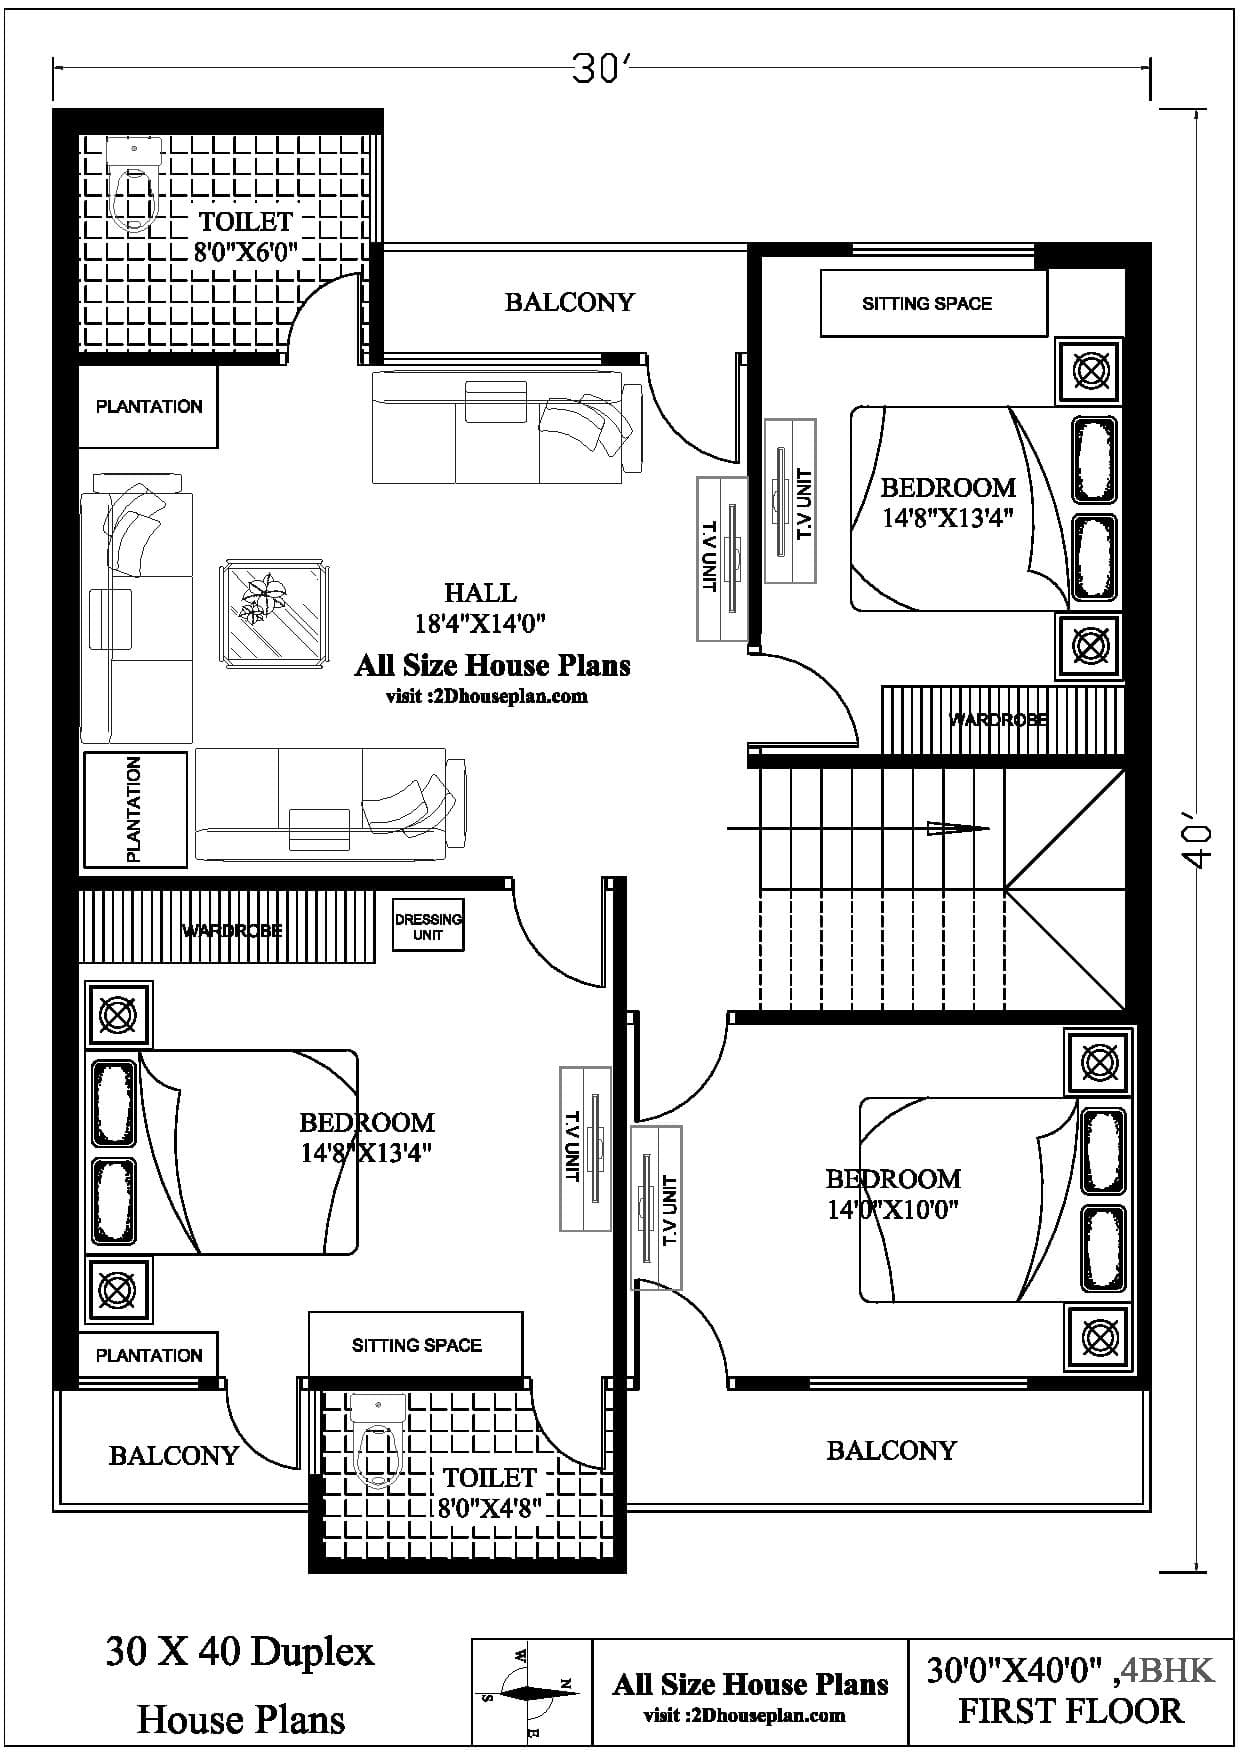 Duplex House Plans For 30x40 Site  5 Bhk Duplex House Plans